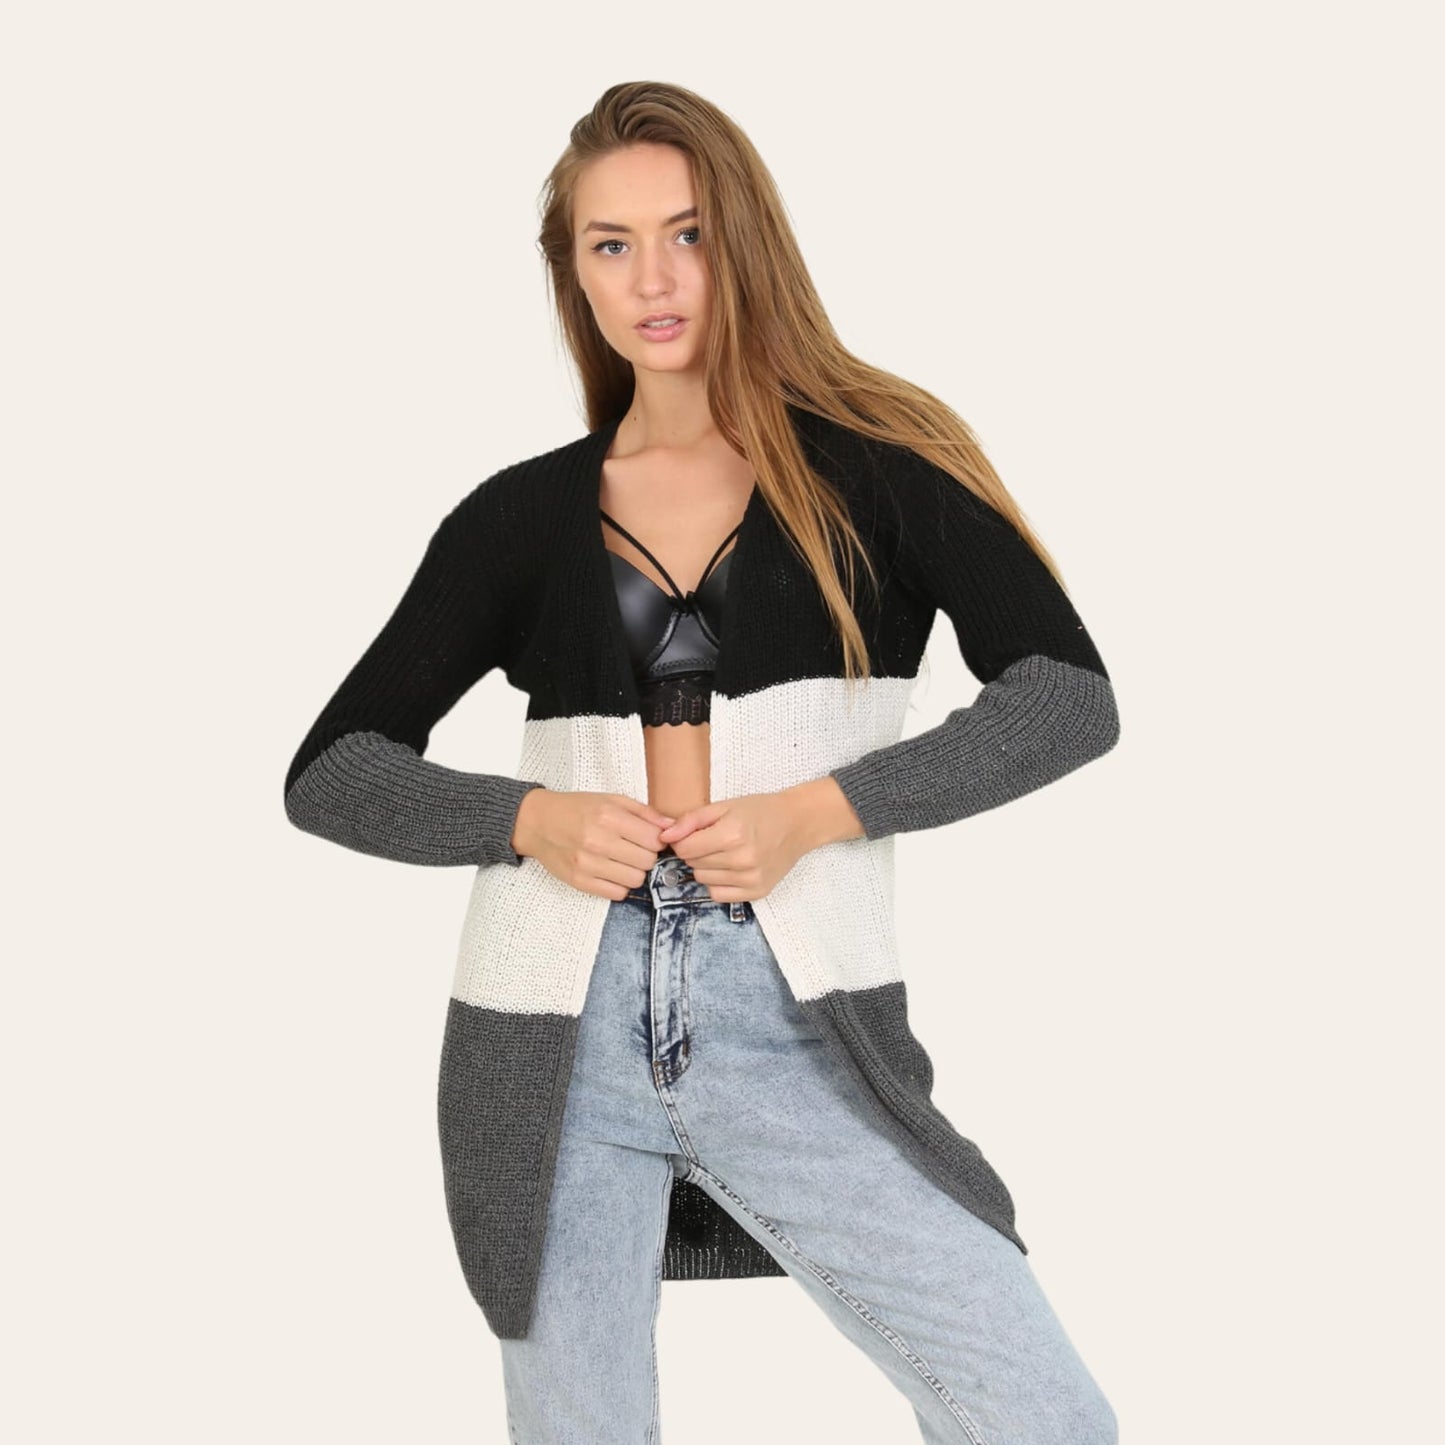 Xhaket (Blaser)Xhaketë e Trikotuar Lonca #LoncaXhaketë e Trikotuar Lonca vjen e hapur dhe pa mbyllje përpara. E përshtatëshme per të gjitha masat e trupit dhe me vija horizontale e ndare në ngjyra të ndryshme. 
 